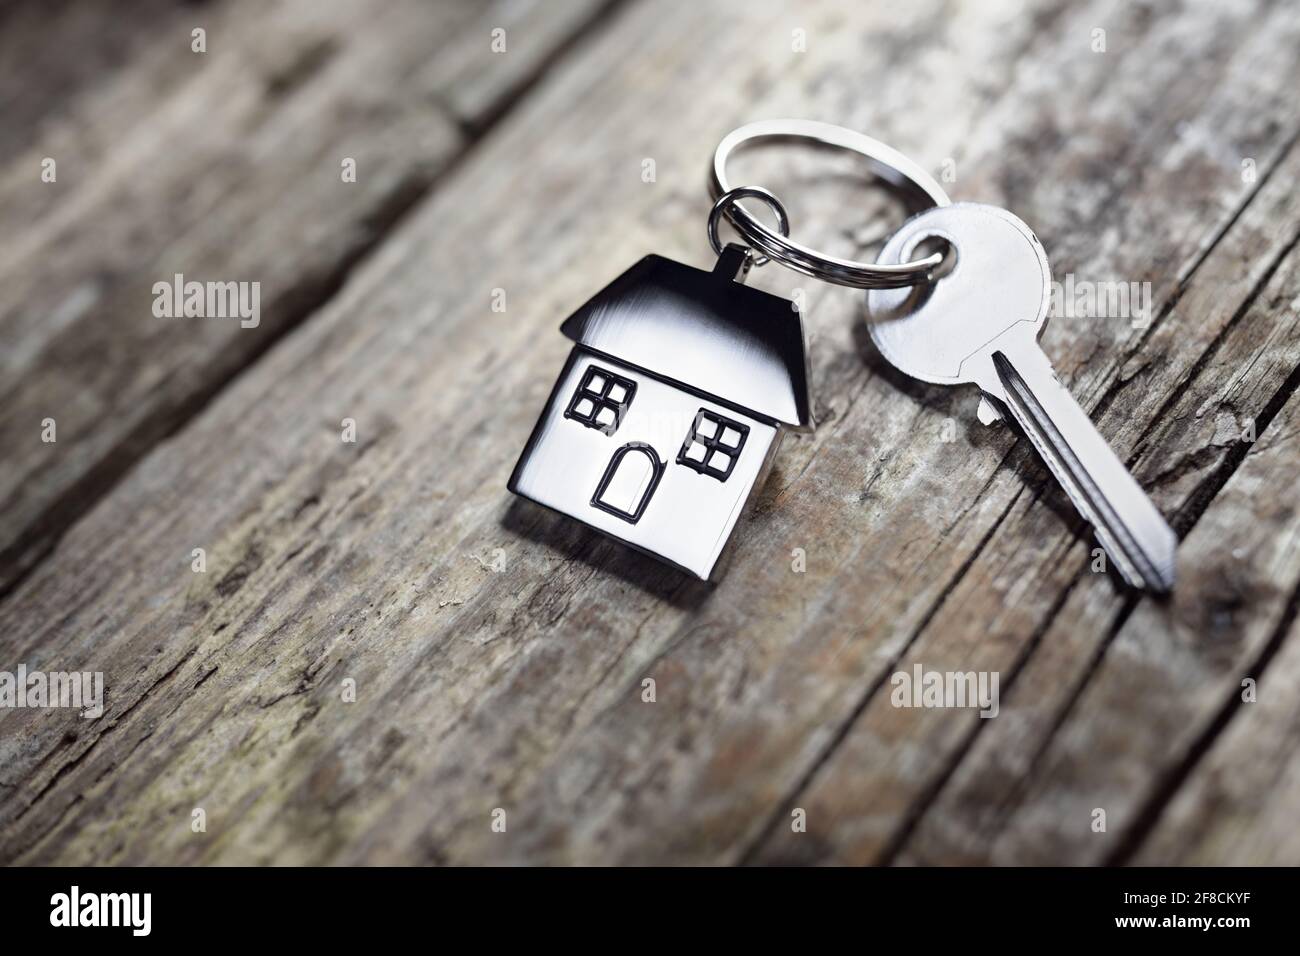 Casa de la llave en un llavero en forma de casa descansando sobre tablas de madera concepto para inmobiliarias, cambiar de casa o alquiler de inmuebles Foto de stock